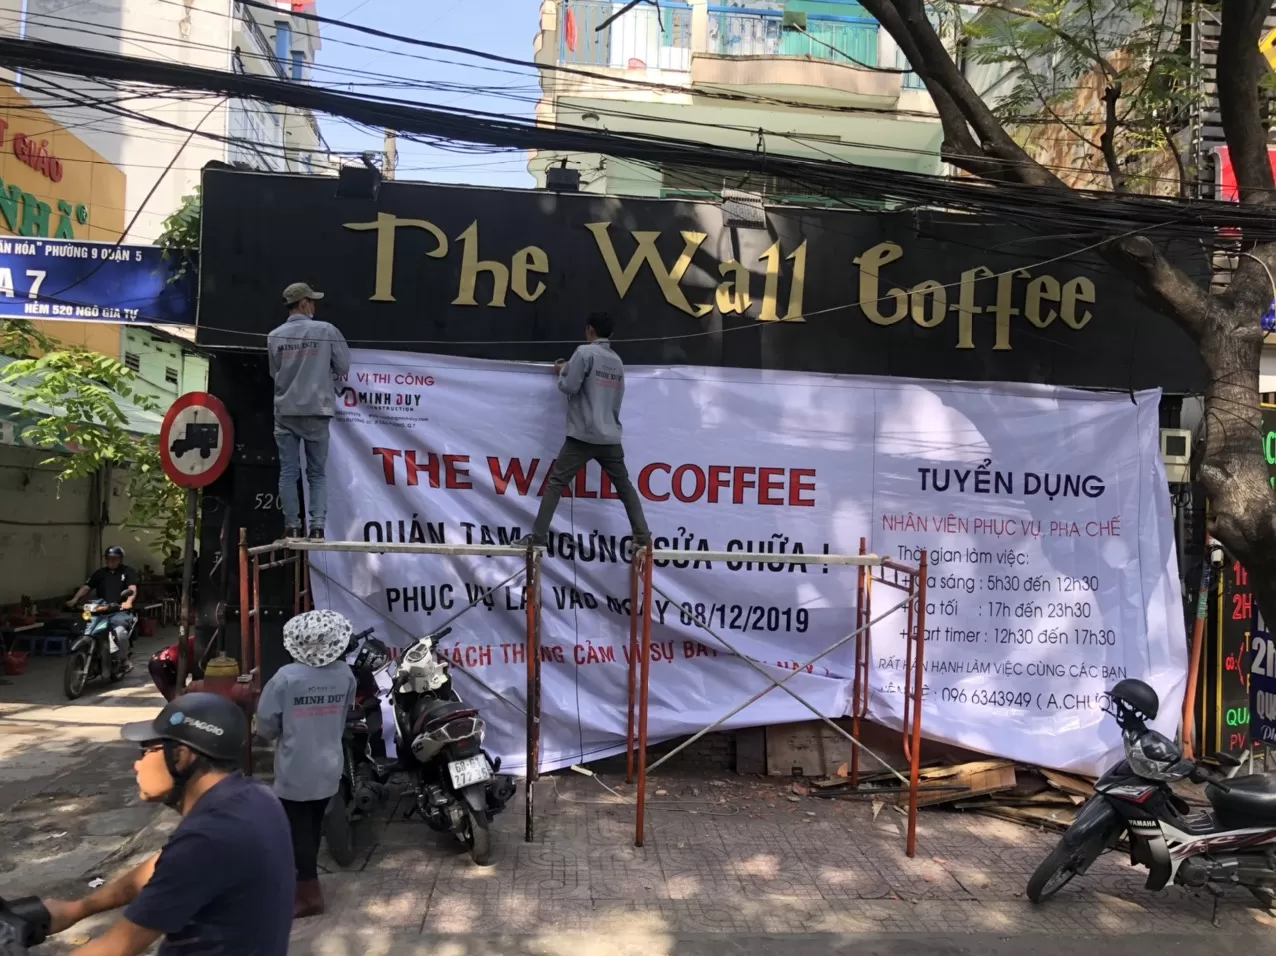 Thi công quán cafe The Wall Coffee